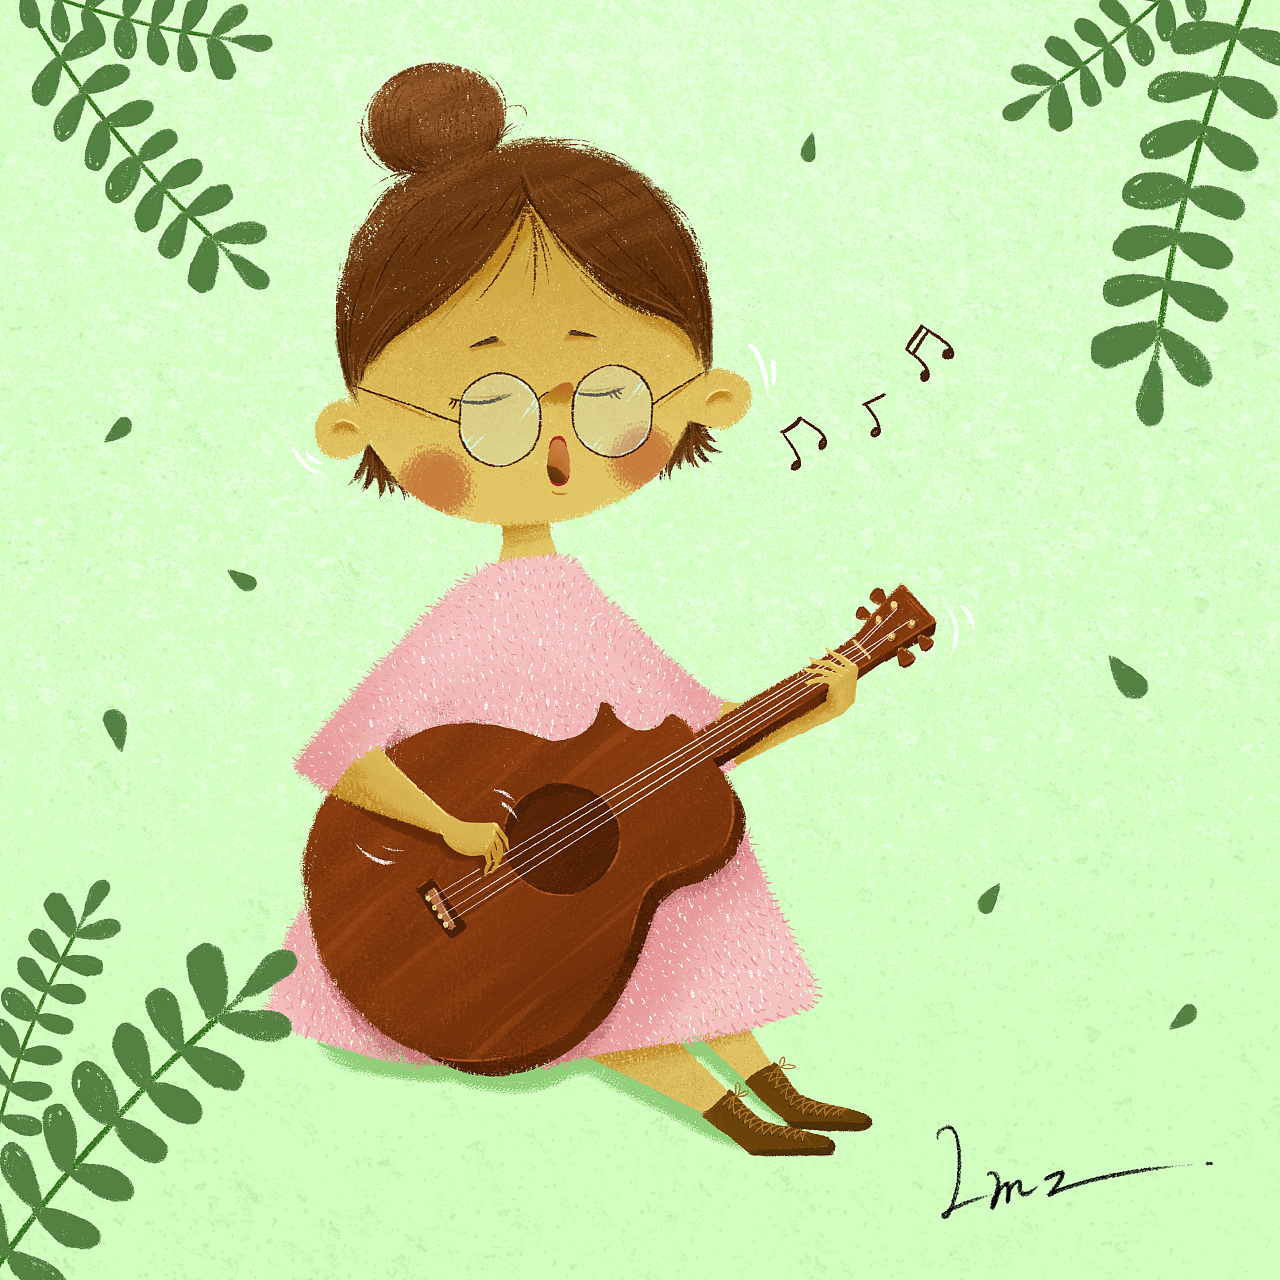 个人创作:弹吉他的小姑娘